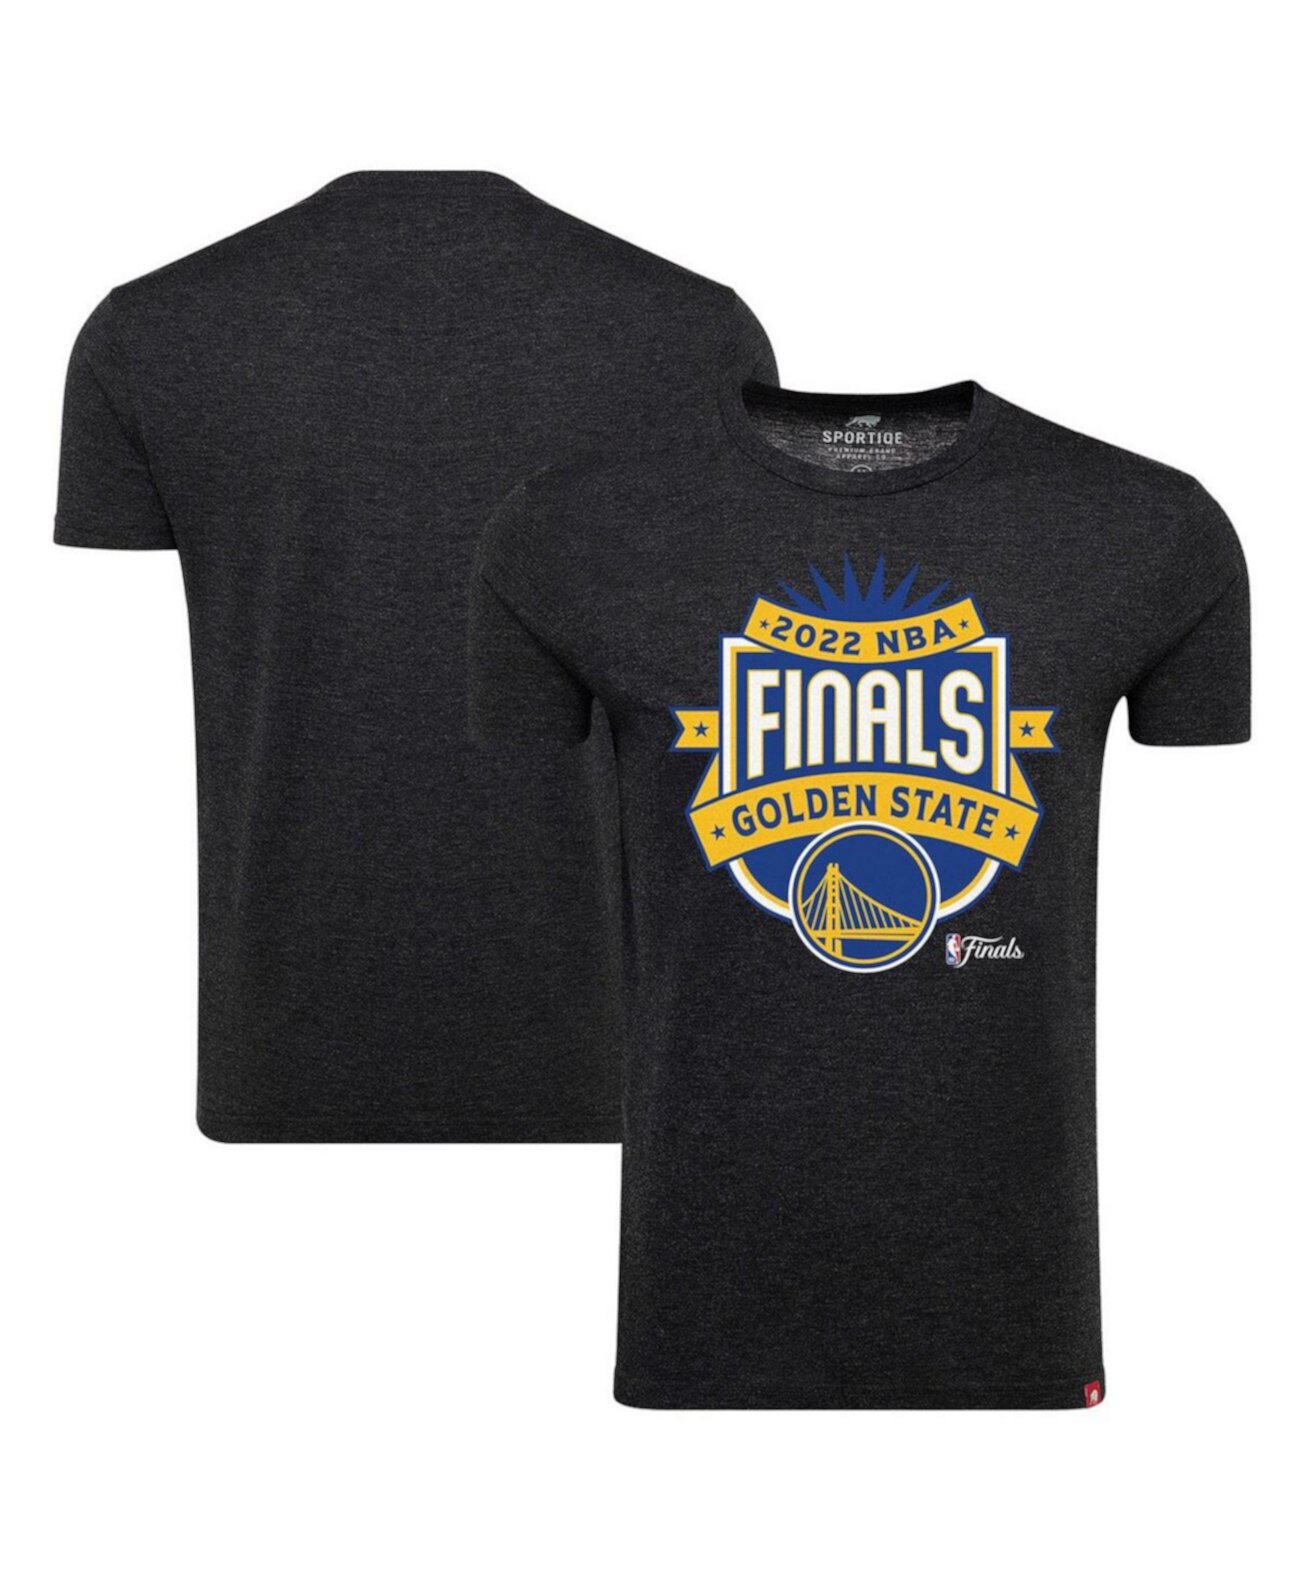 Мужская черная удобная футболка с гербом Golden State Warriors 2022 NBA Finals Sportiqe